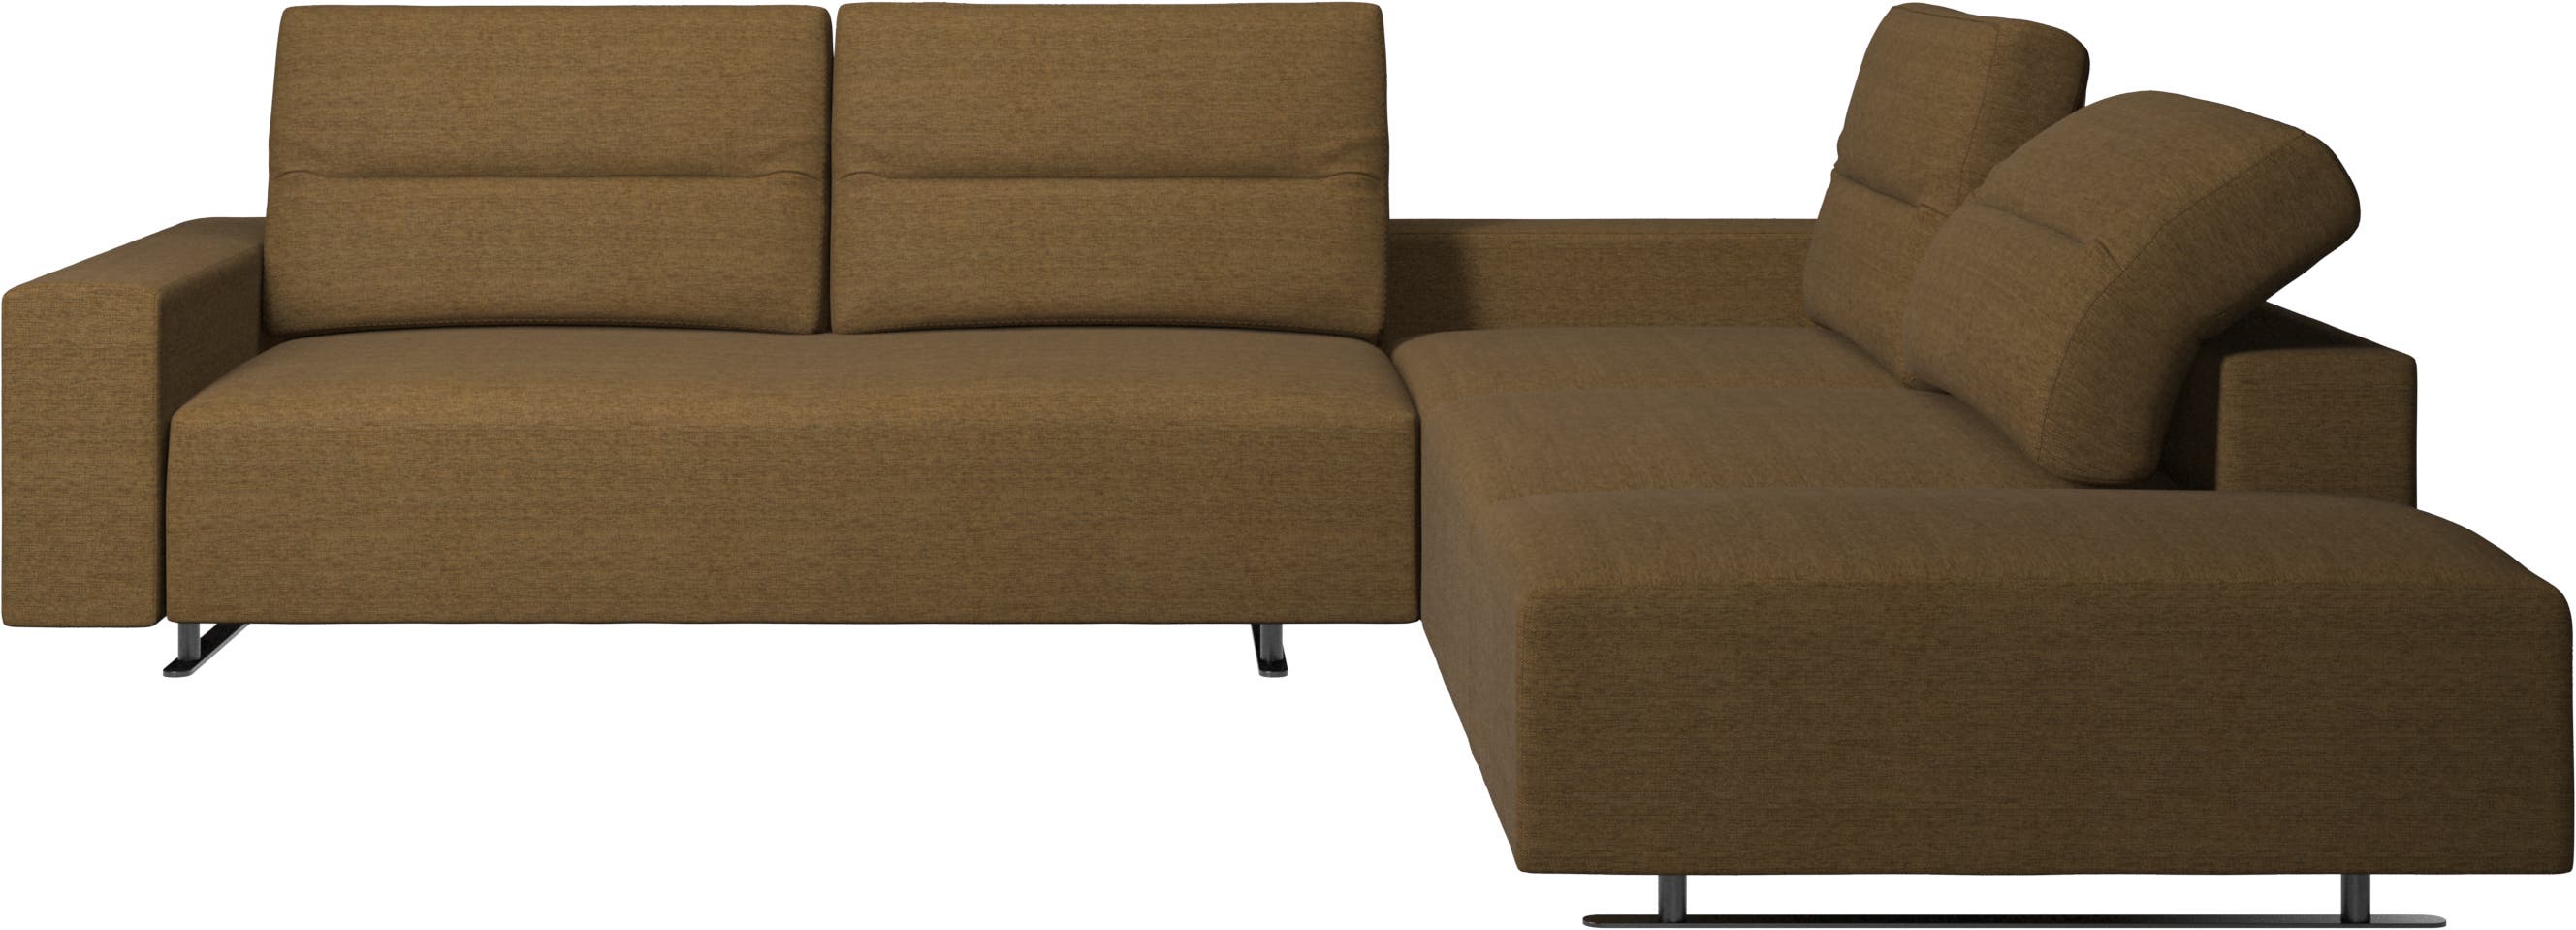 Γωνιακός καναπές Hampton με ρυθμιζόμενη πλάτη και μονάδα lounging